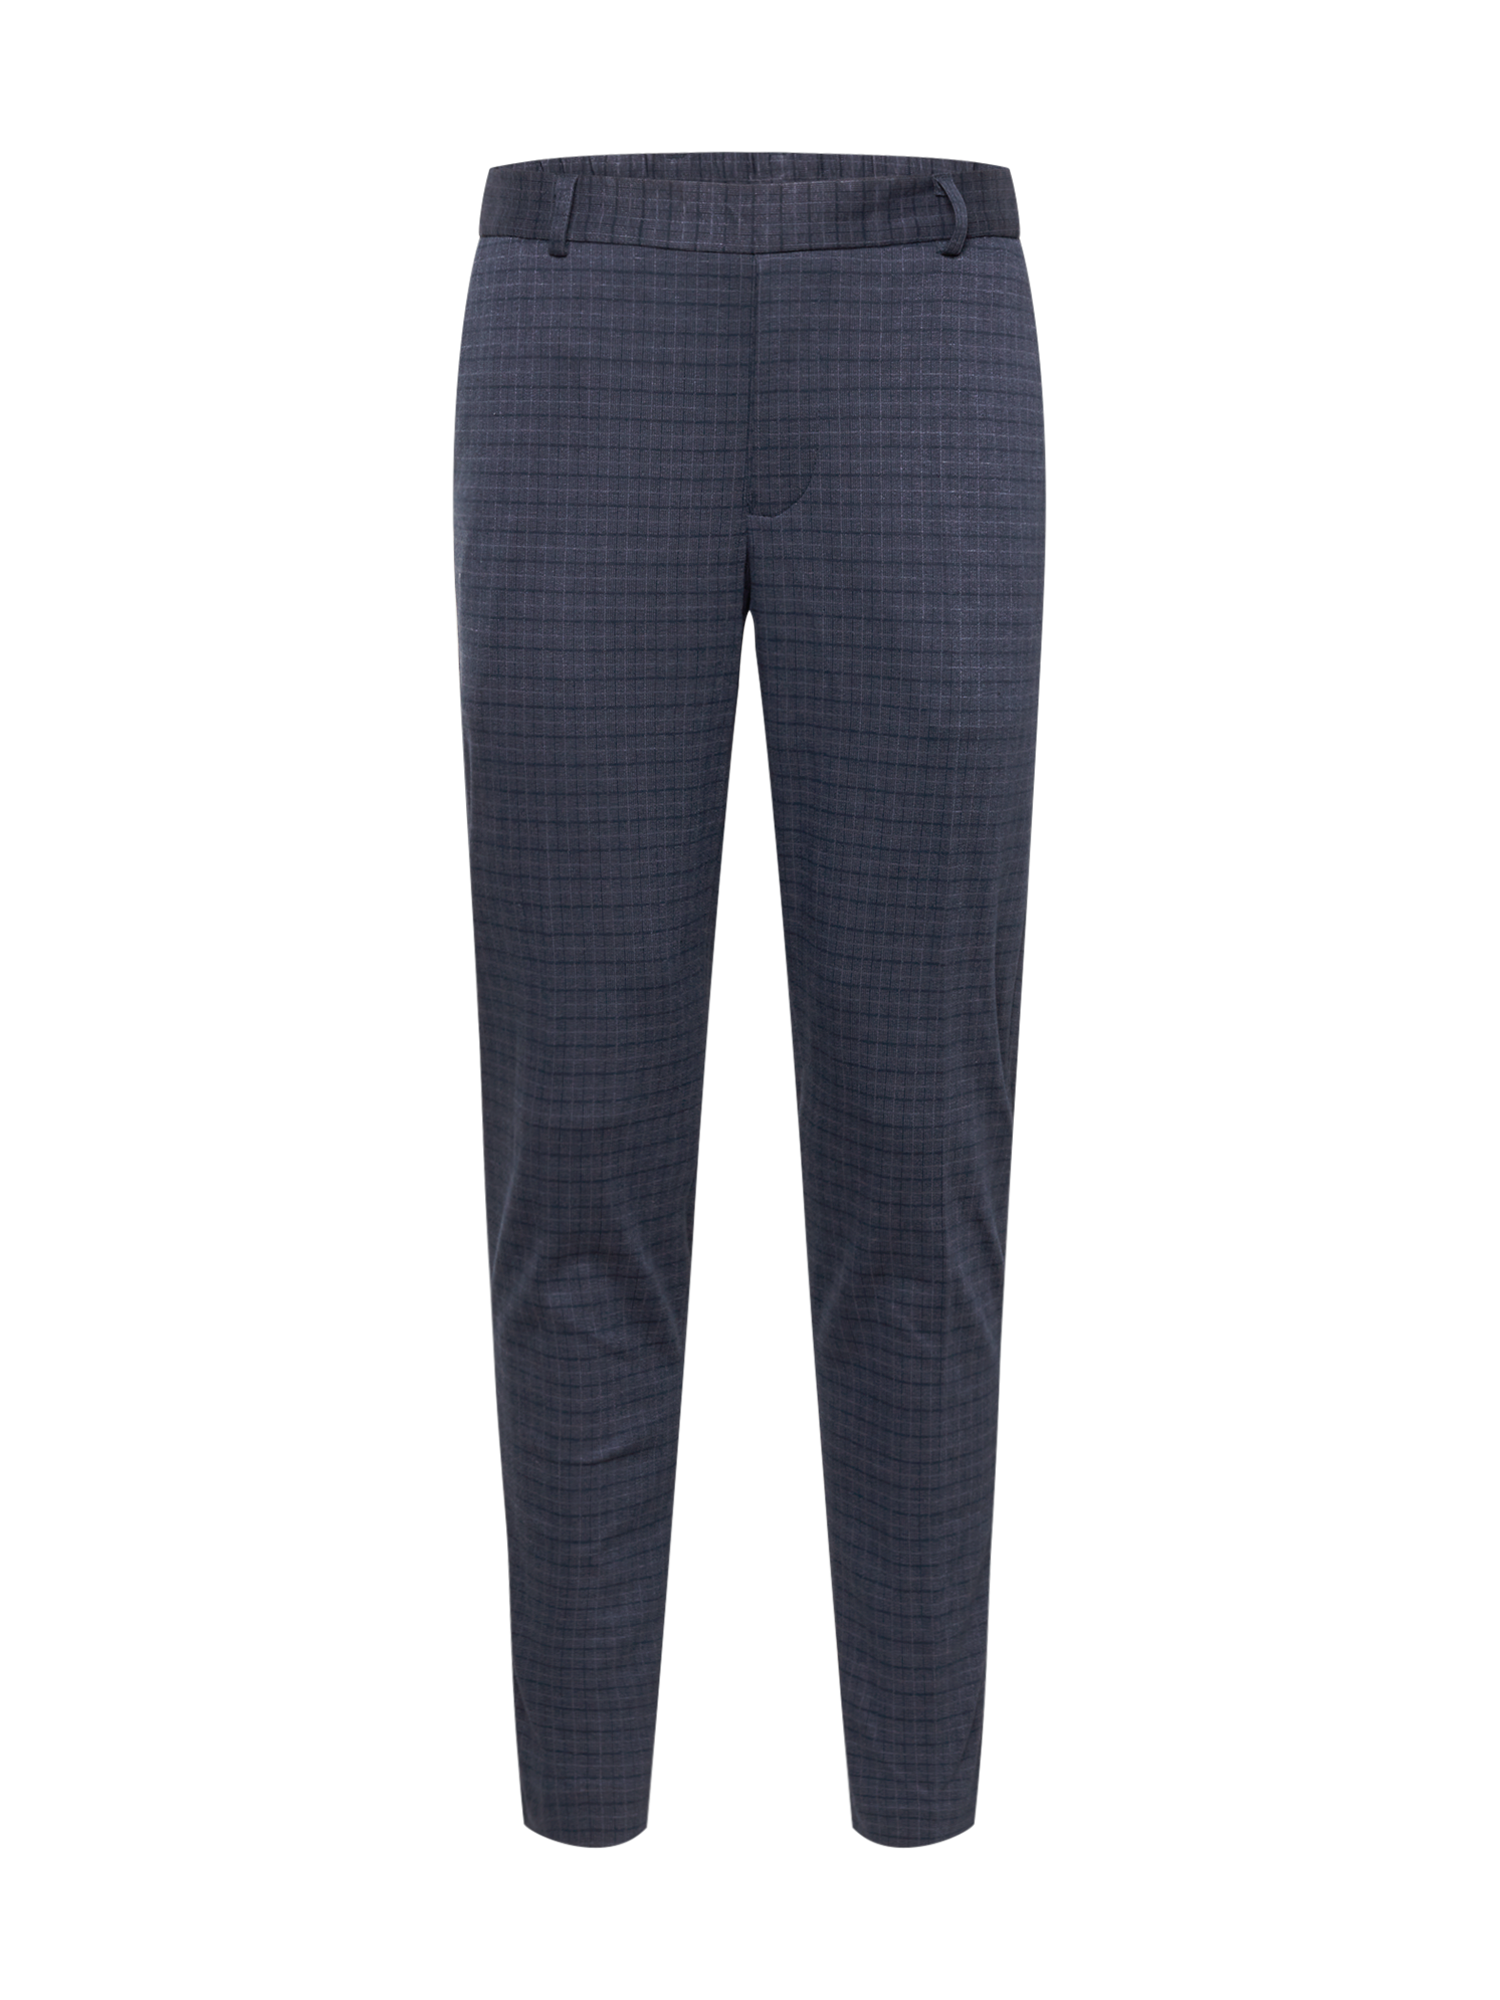 BJ6cX Odzież Only & Sons Spodnie w kolorze Atramentowym 